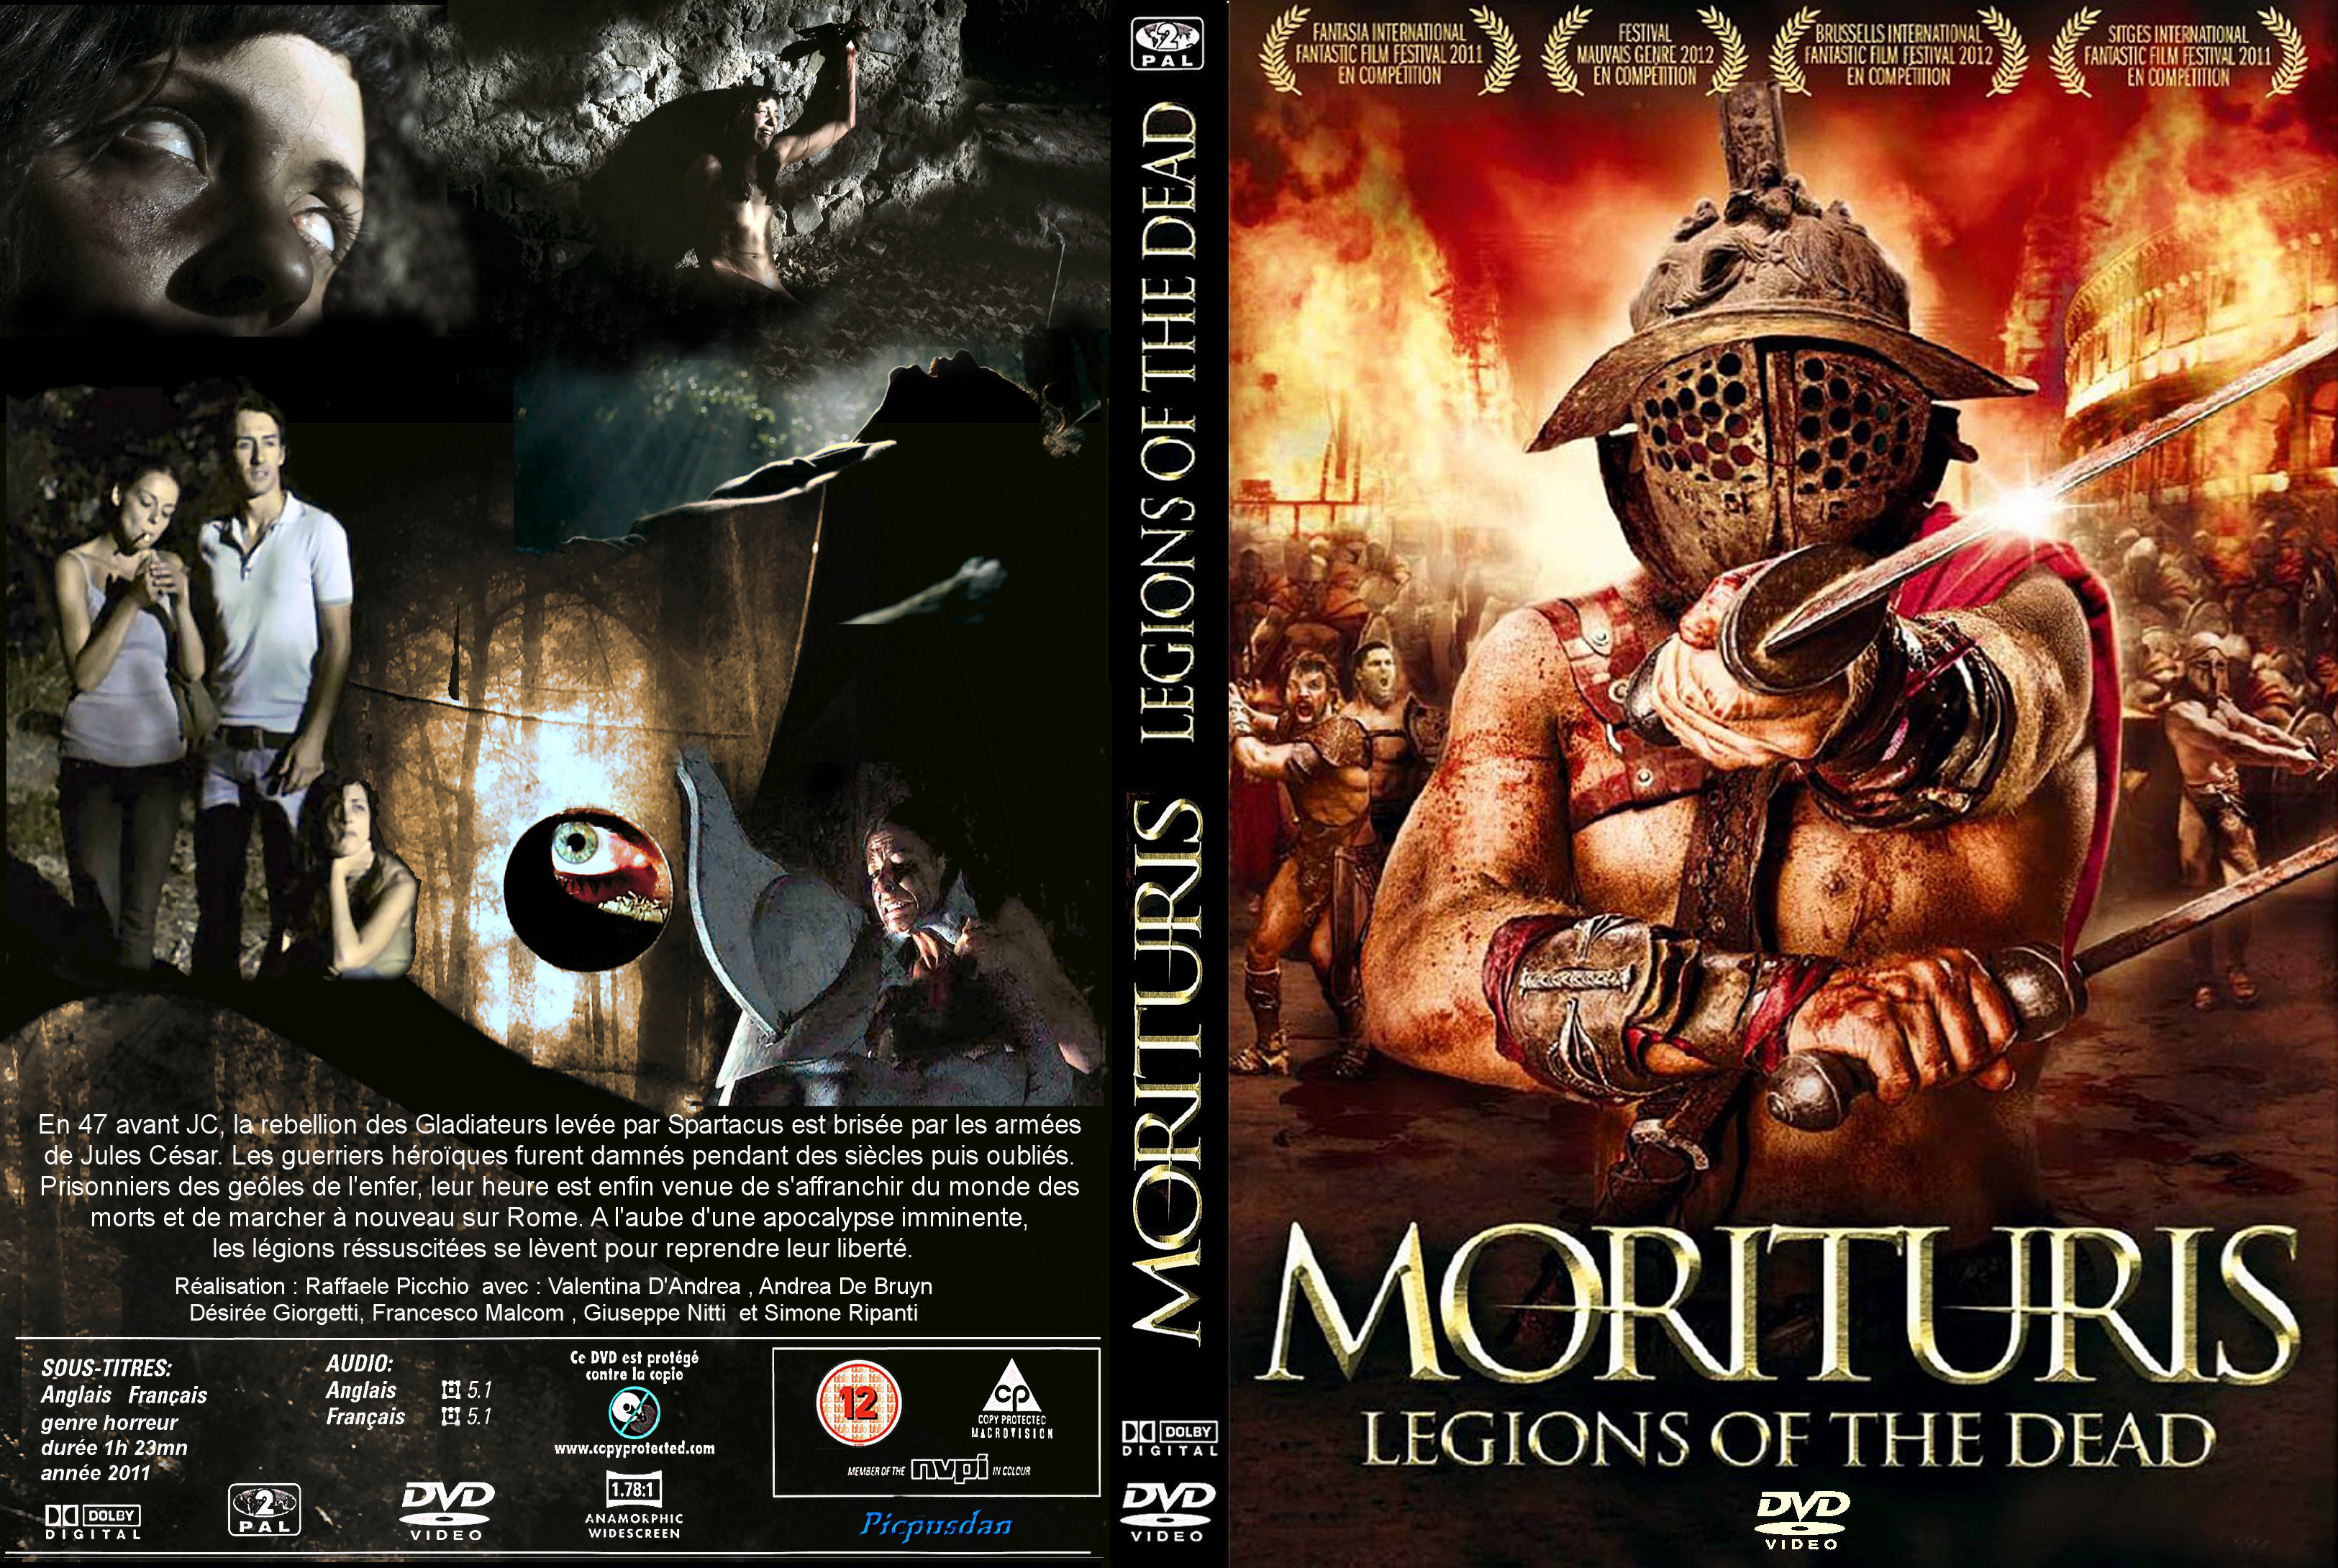 Jaquette DVD Morituris Legions of the dead custom